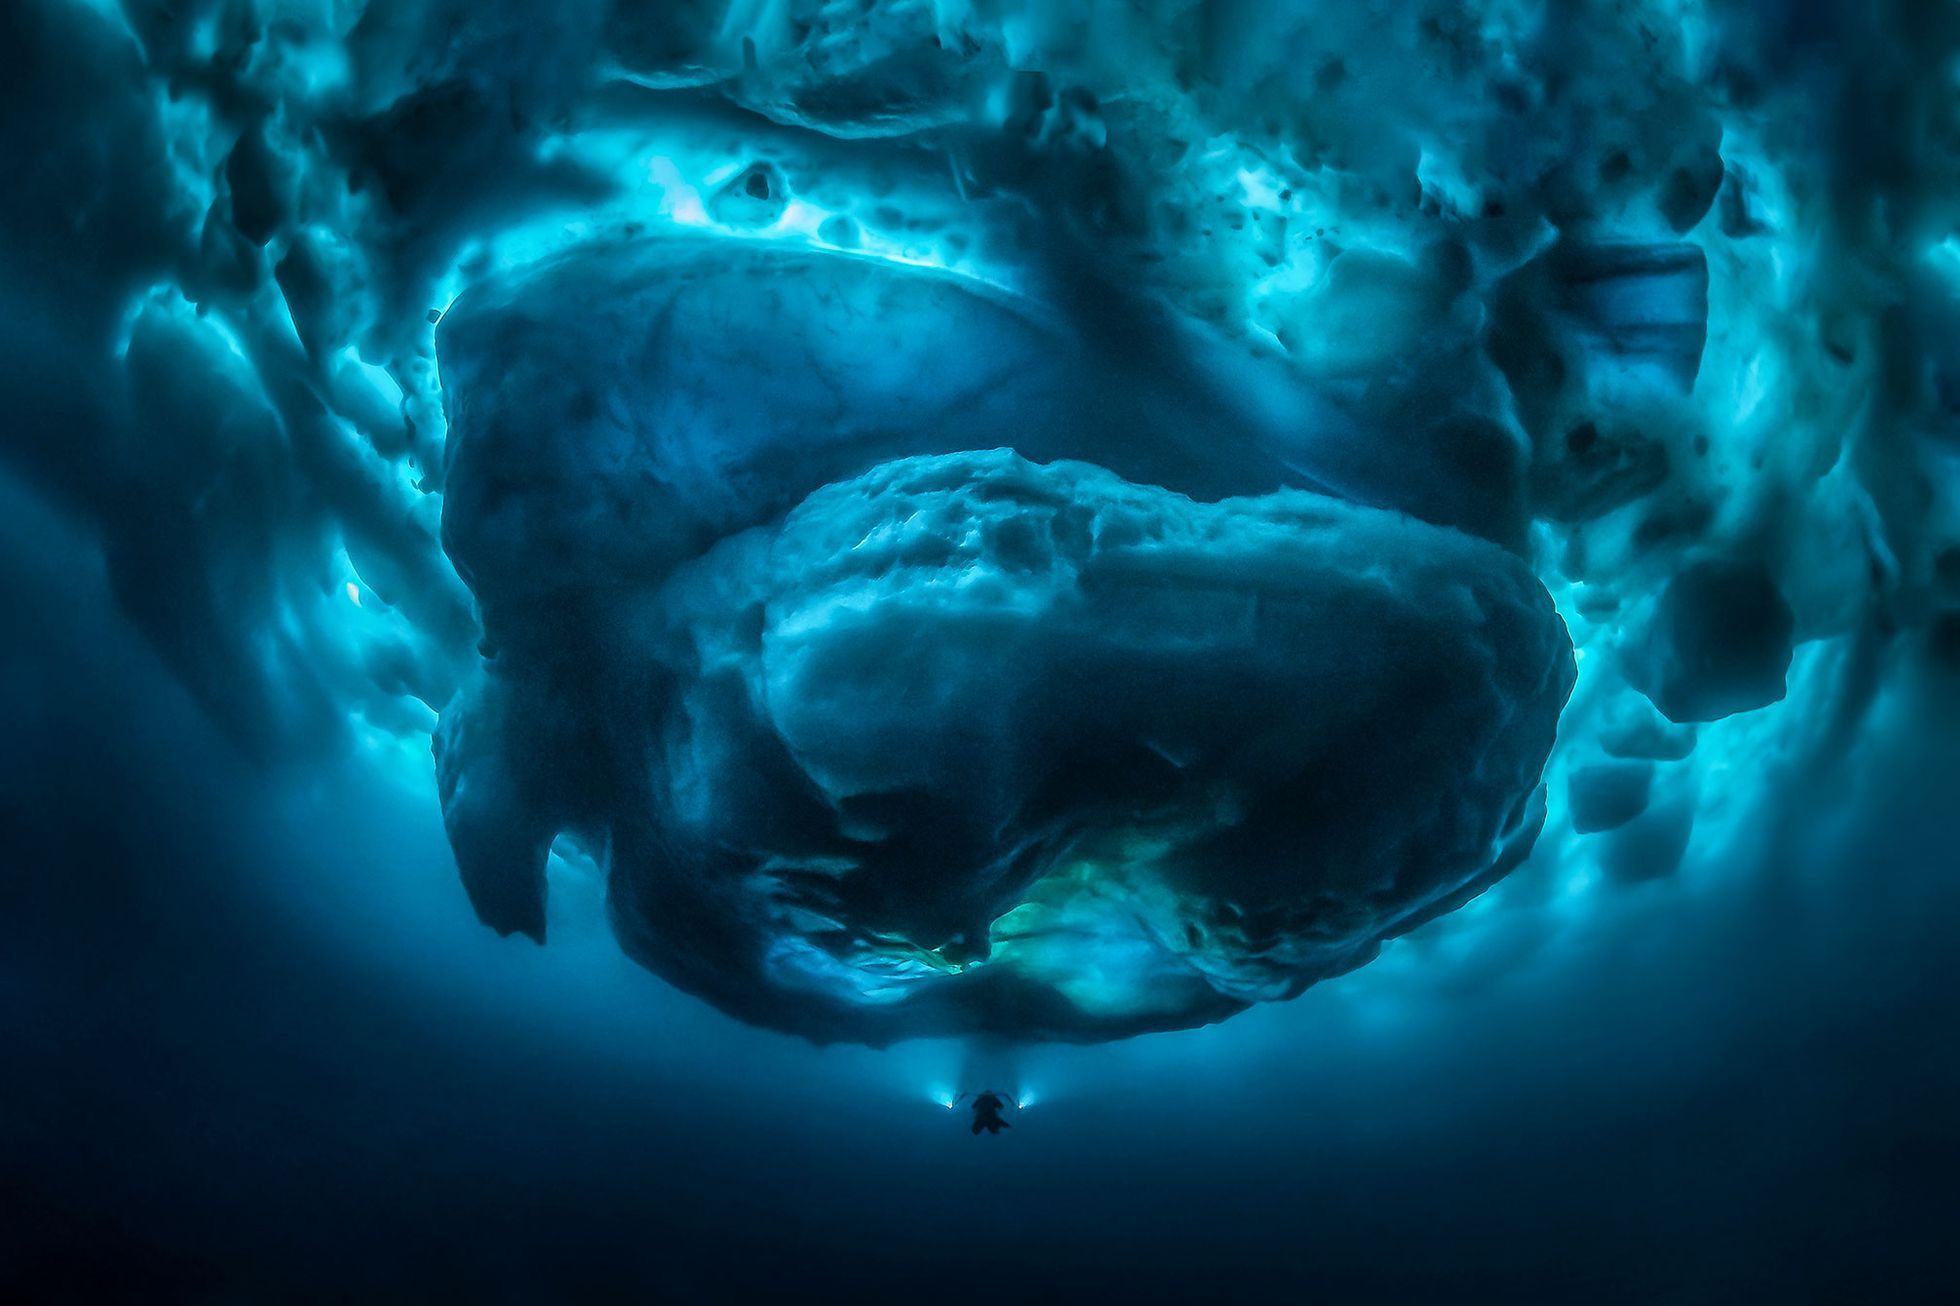 Underwater Photographer of the Year 2020 - vítězné fotografie